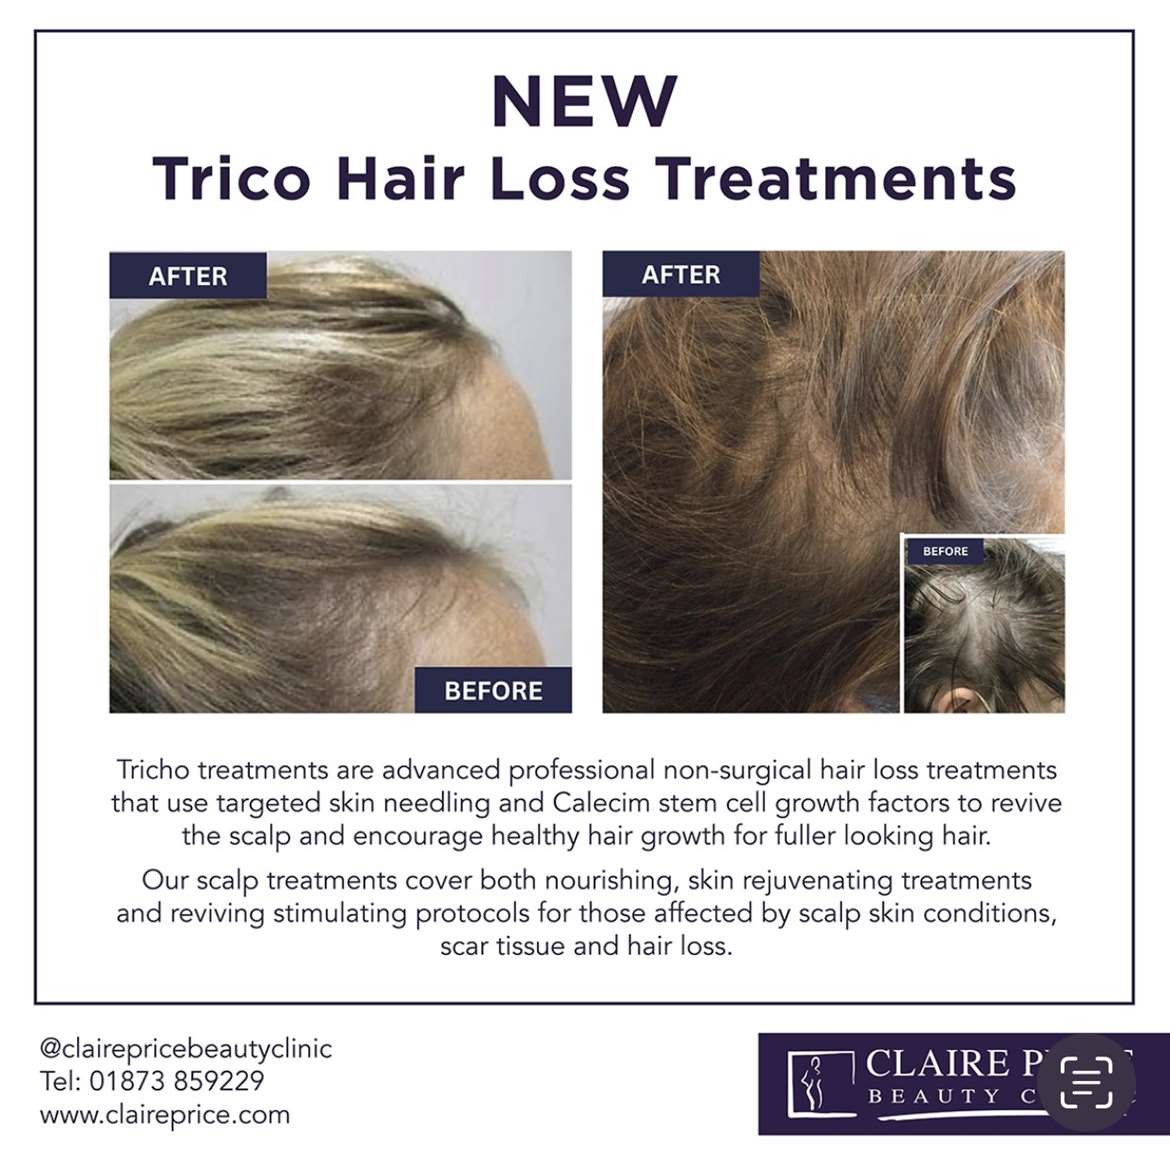 New Trico Hair Loss Treatment